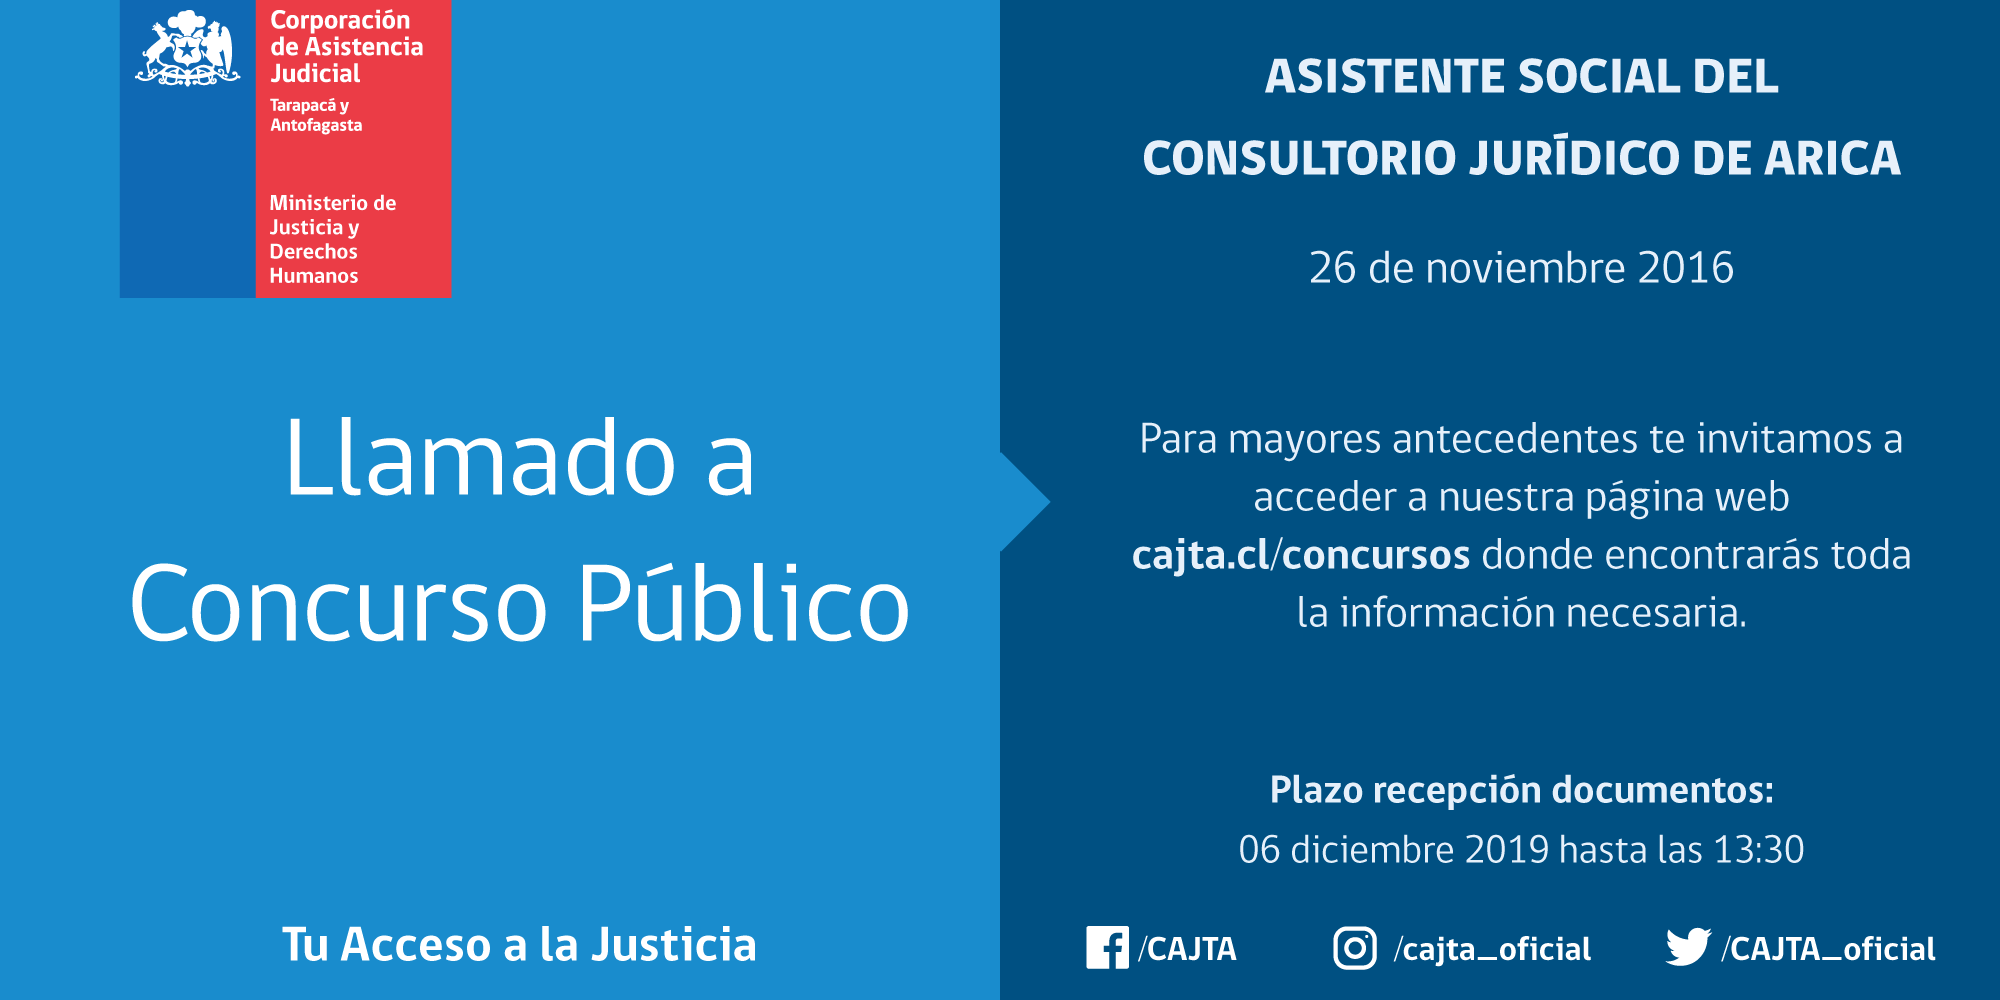 Llamado a Concurso Público Asistente Social del Consultorio Jurídico de Arica